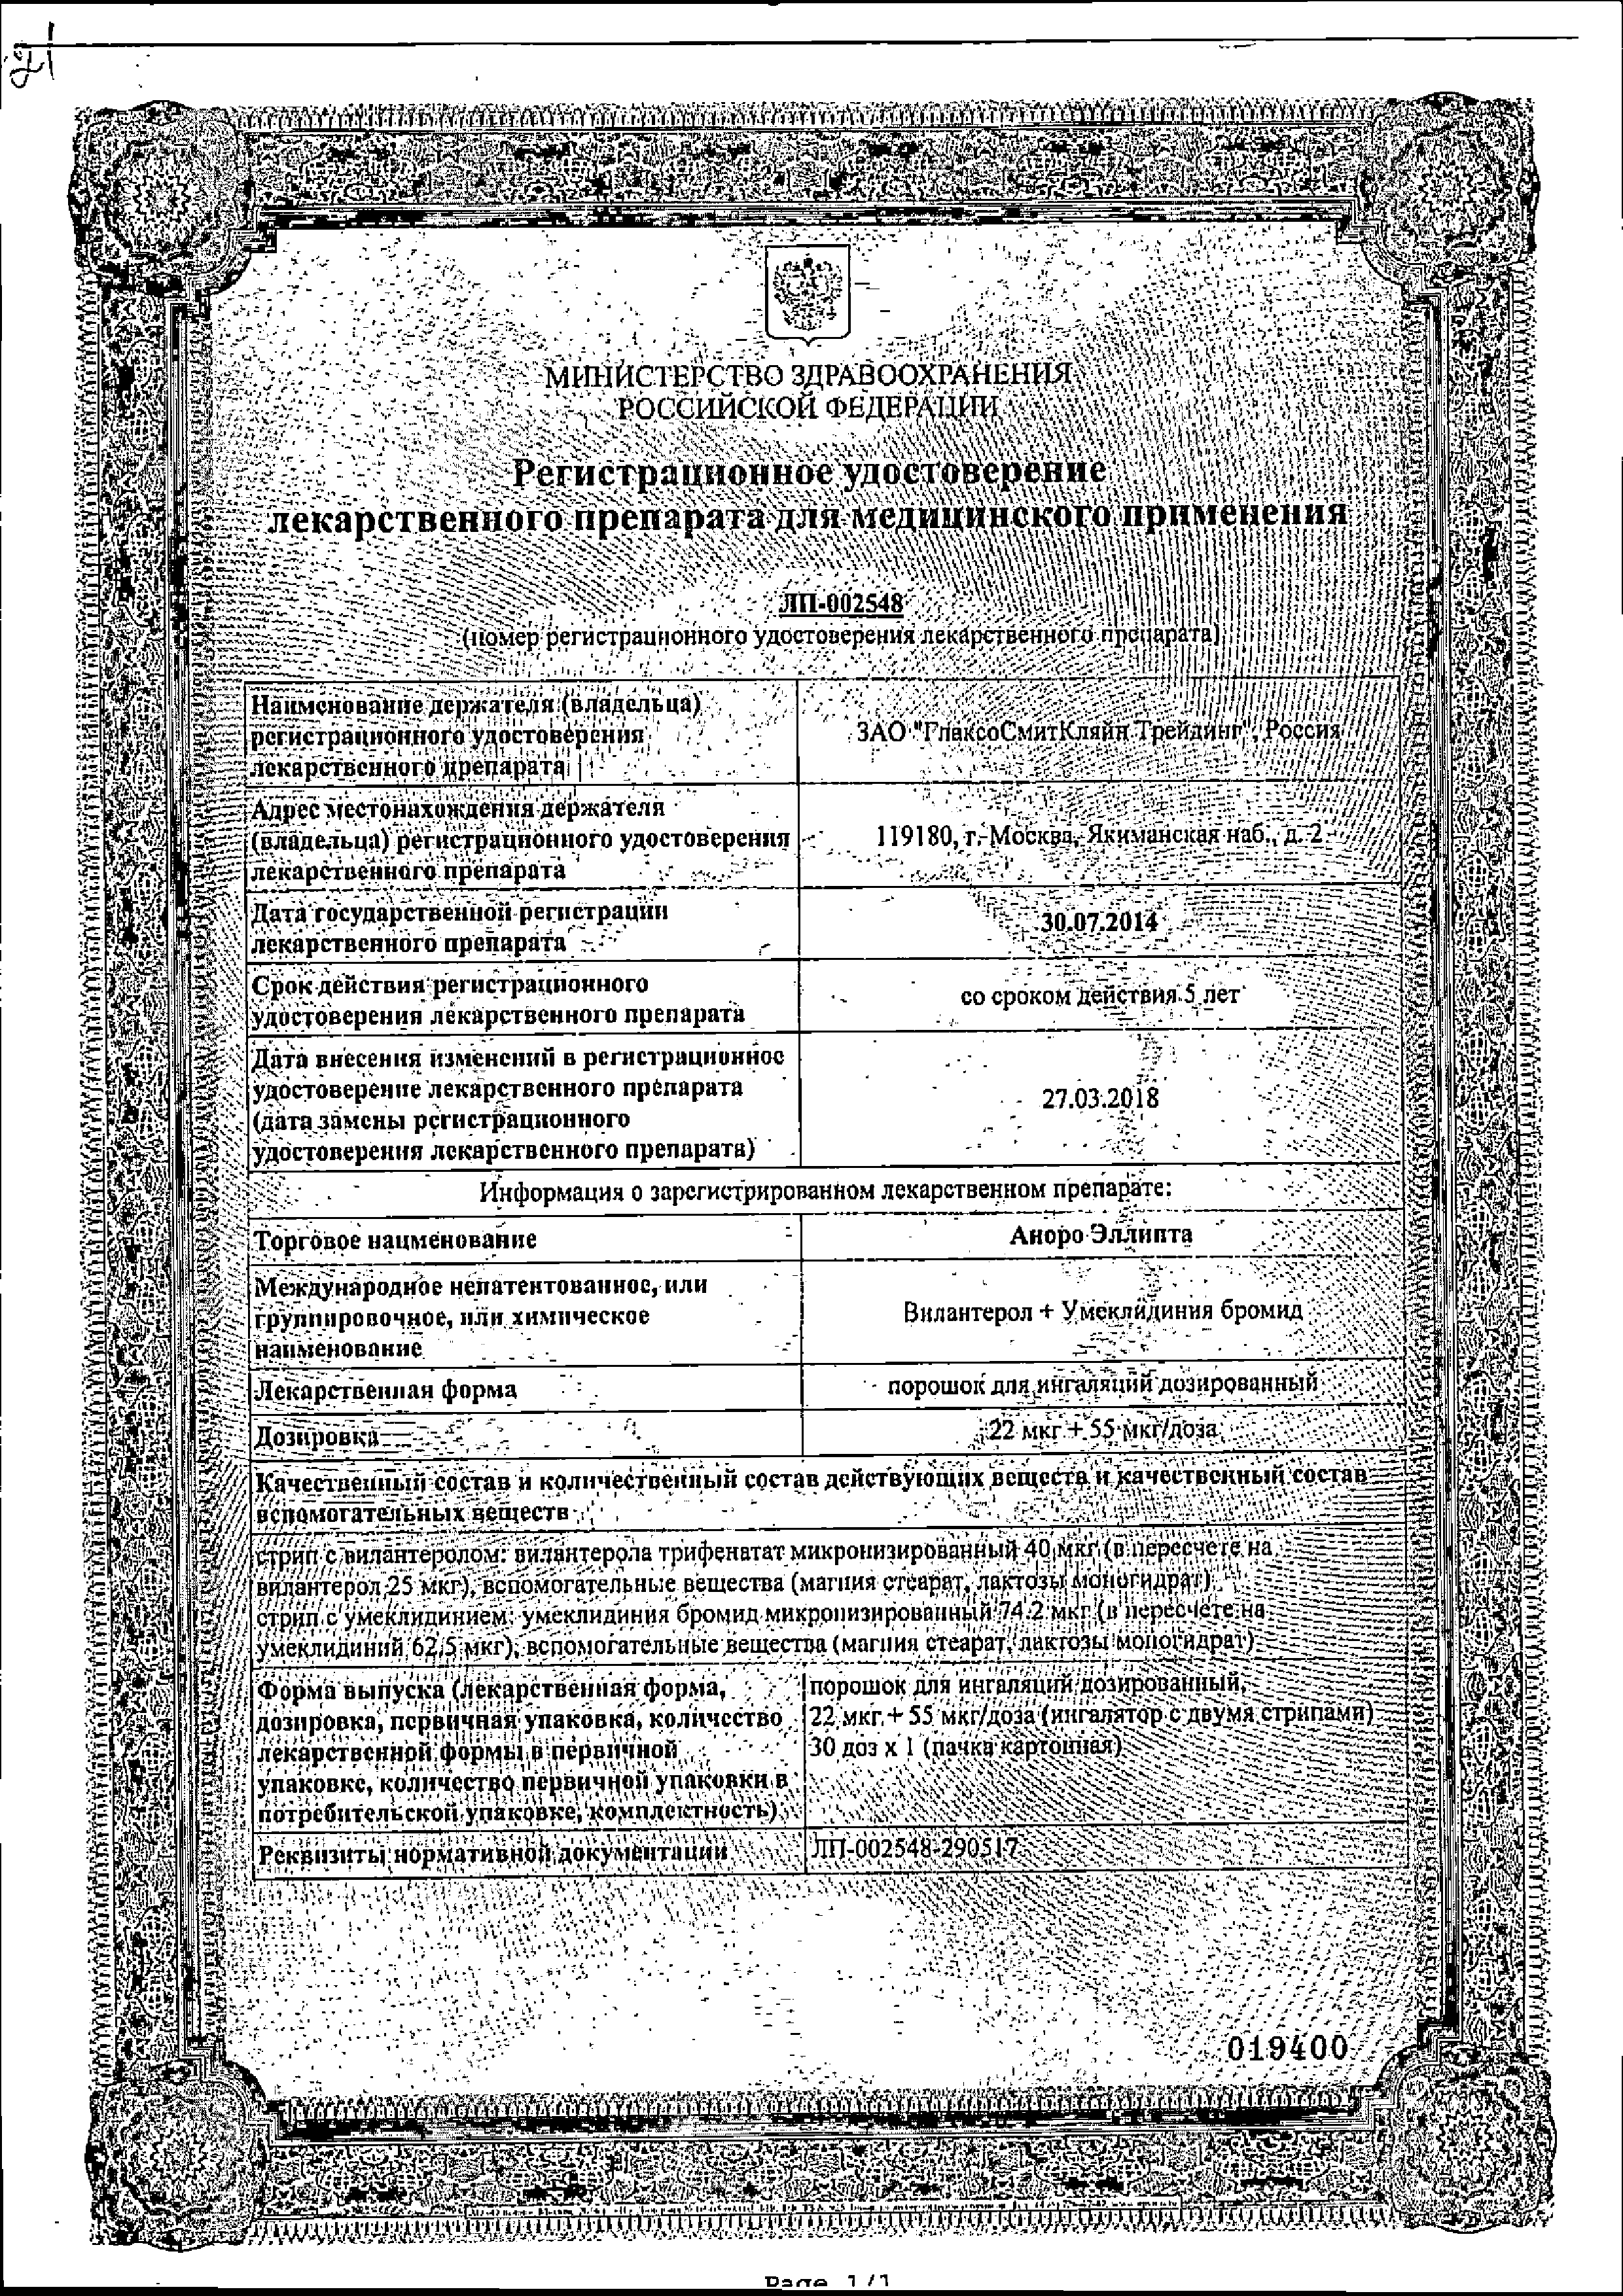 Аноро Эллипта сертификат